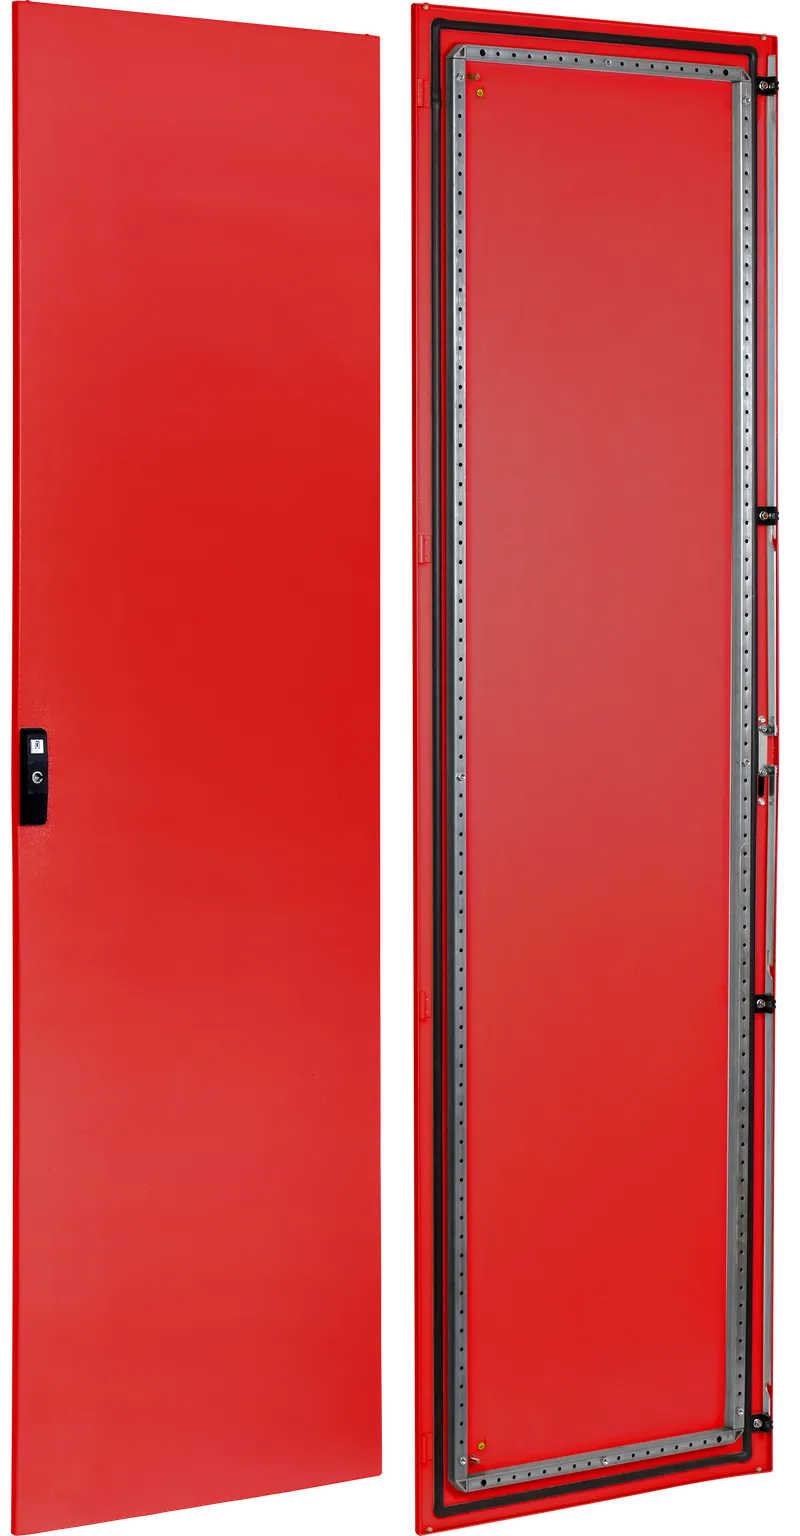 FORMAT Дверь металлическая 2000х800мм RAL3020 красная IEK